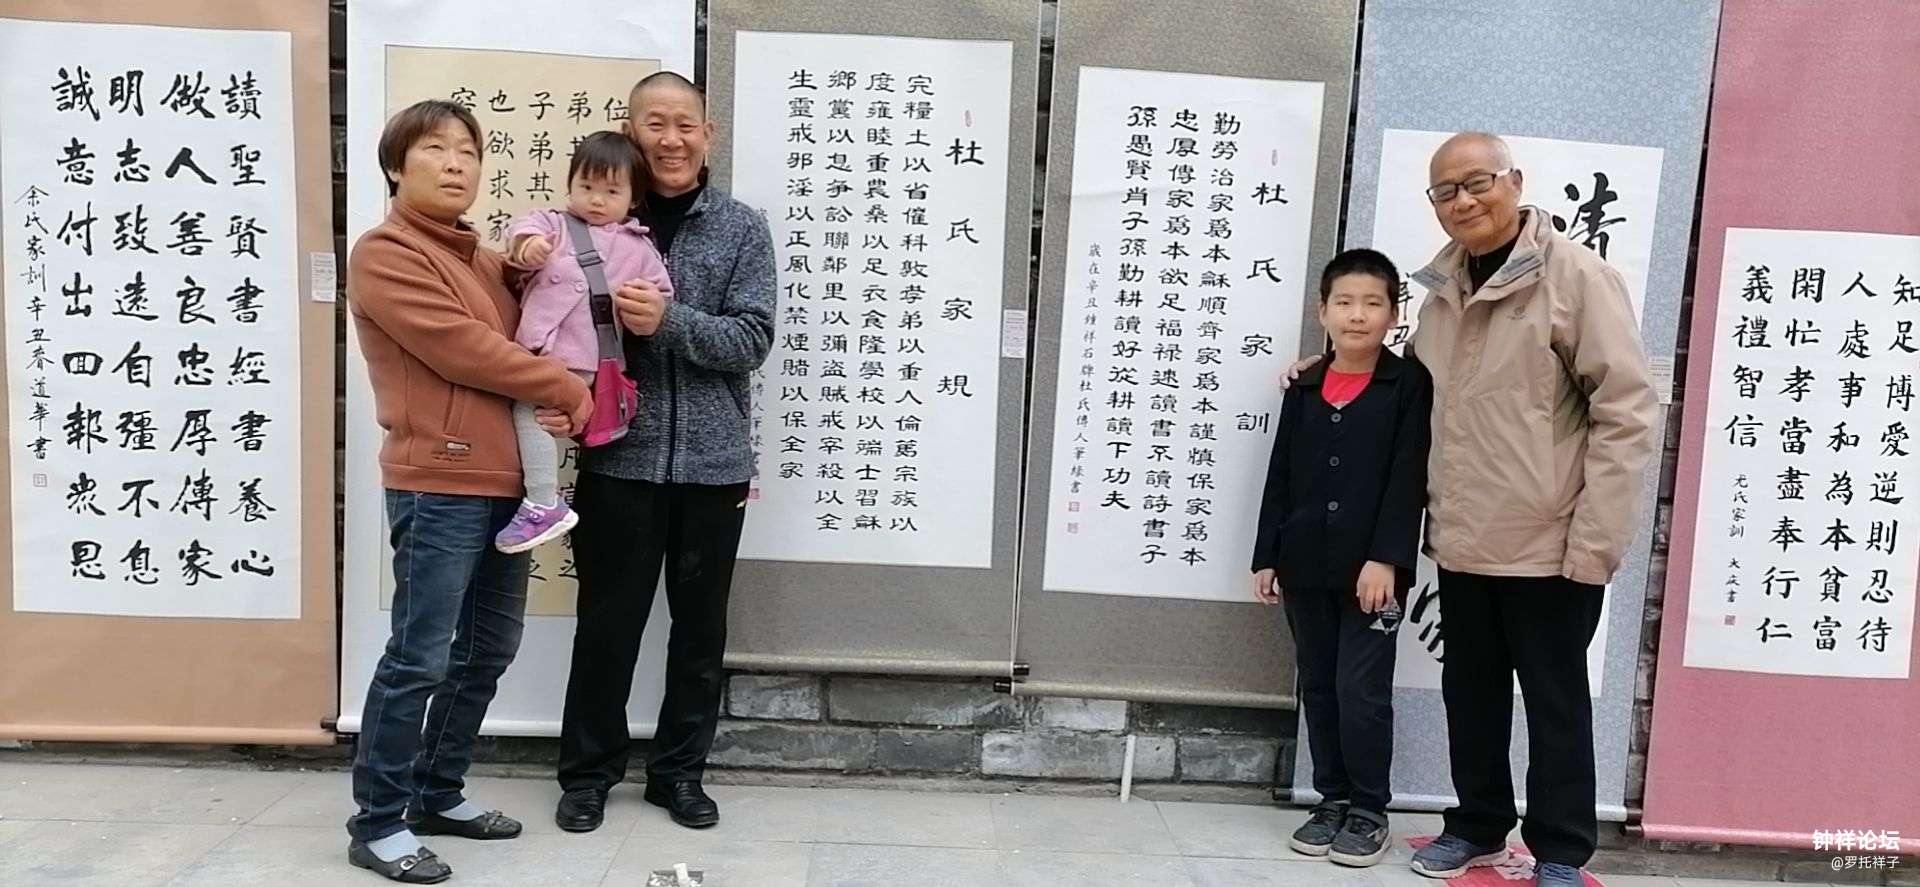 杜晓栋（右一）与二子儿媳和重孙子重孙女在杜氏家训书画作品前合影留念